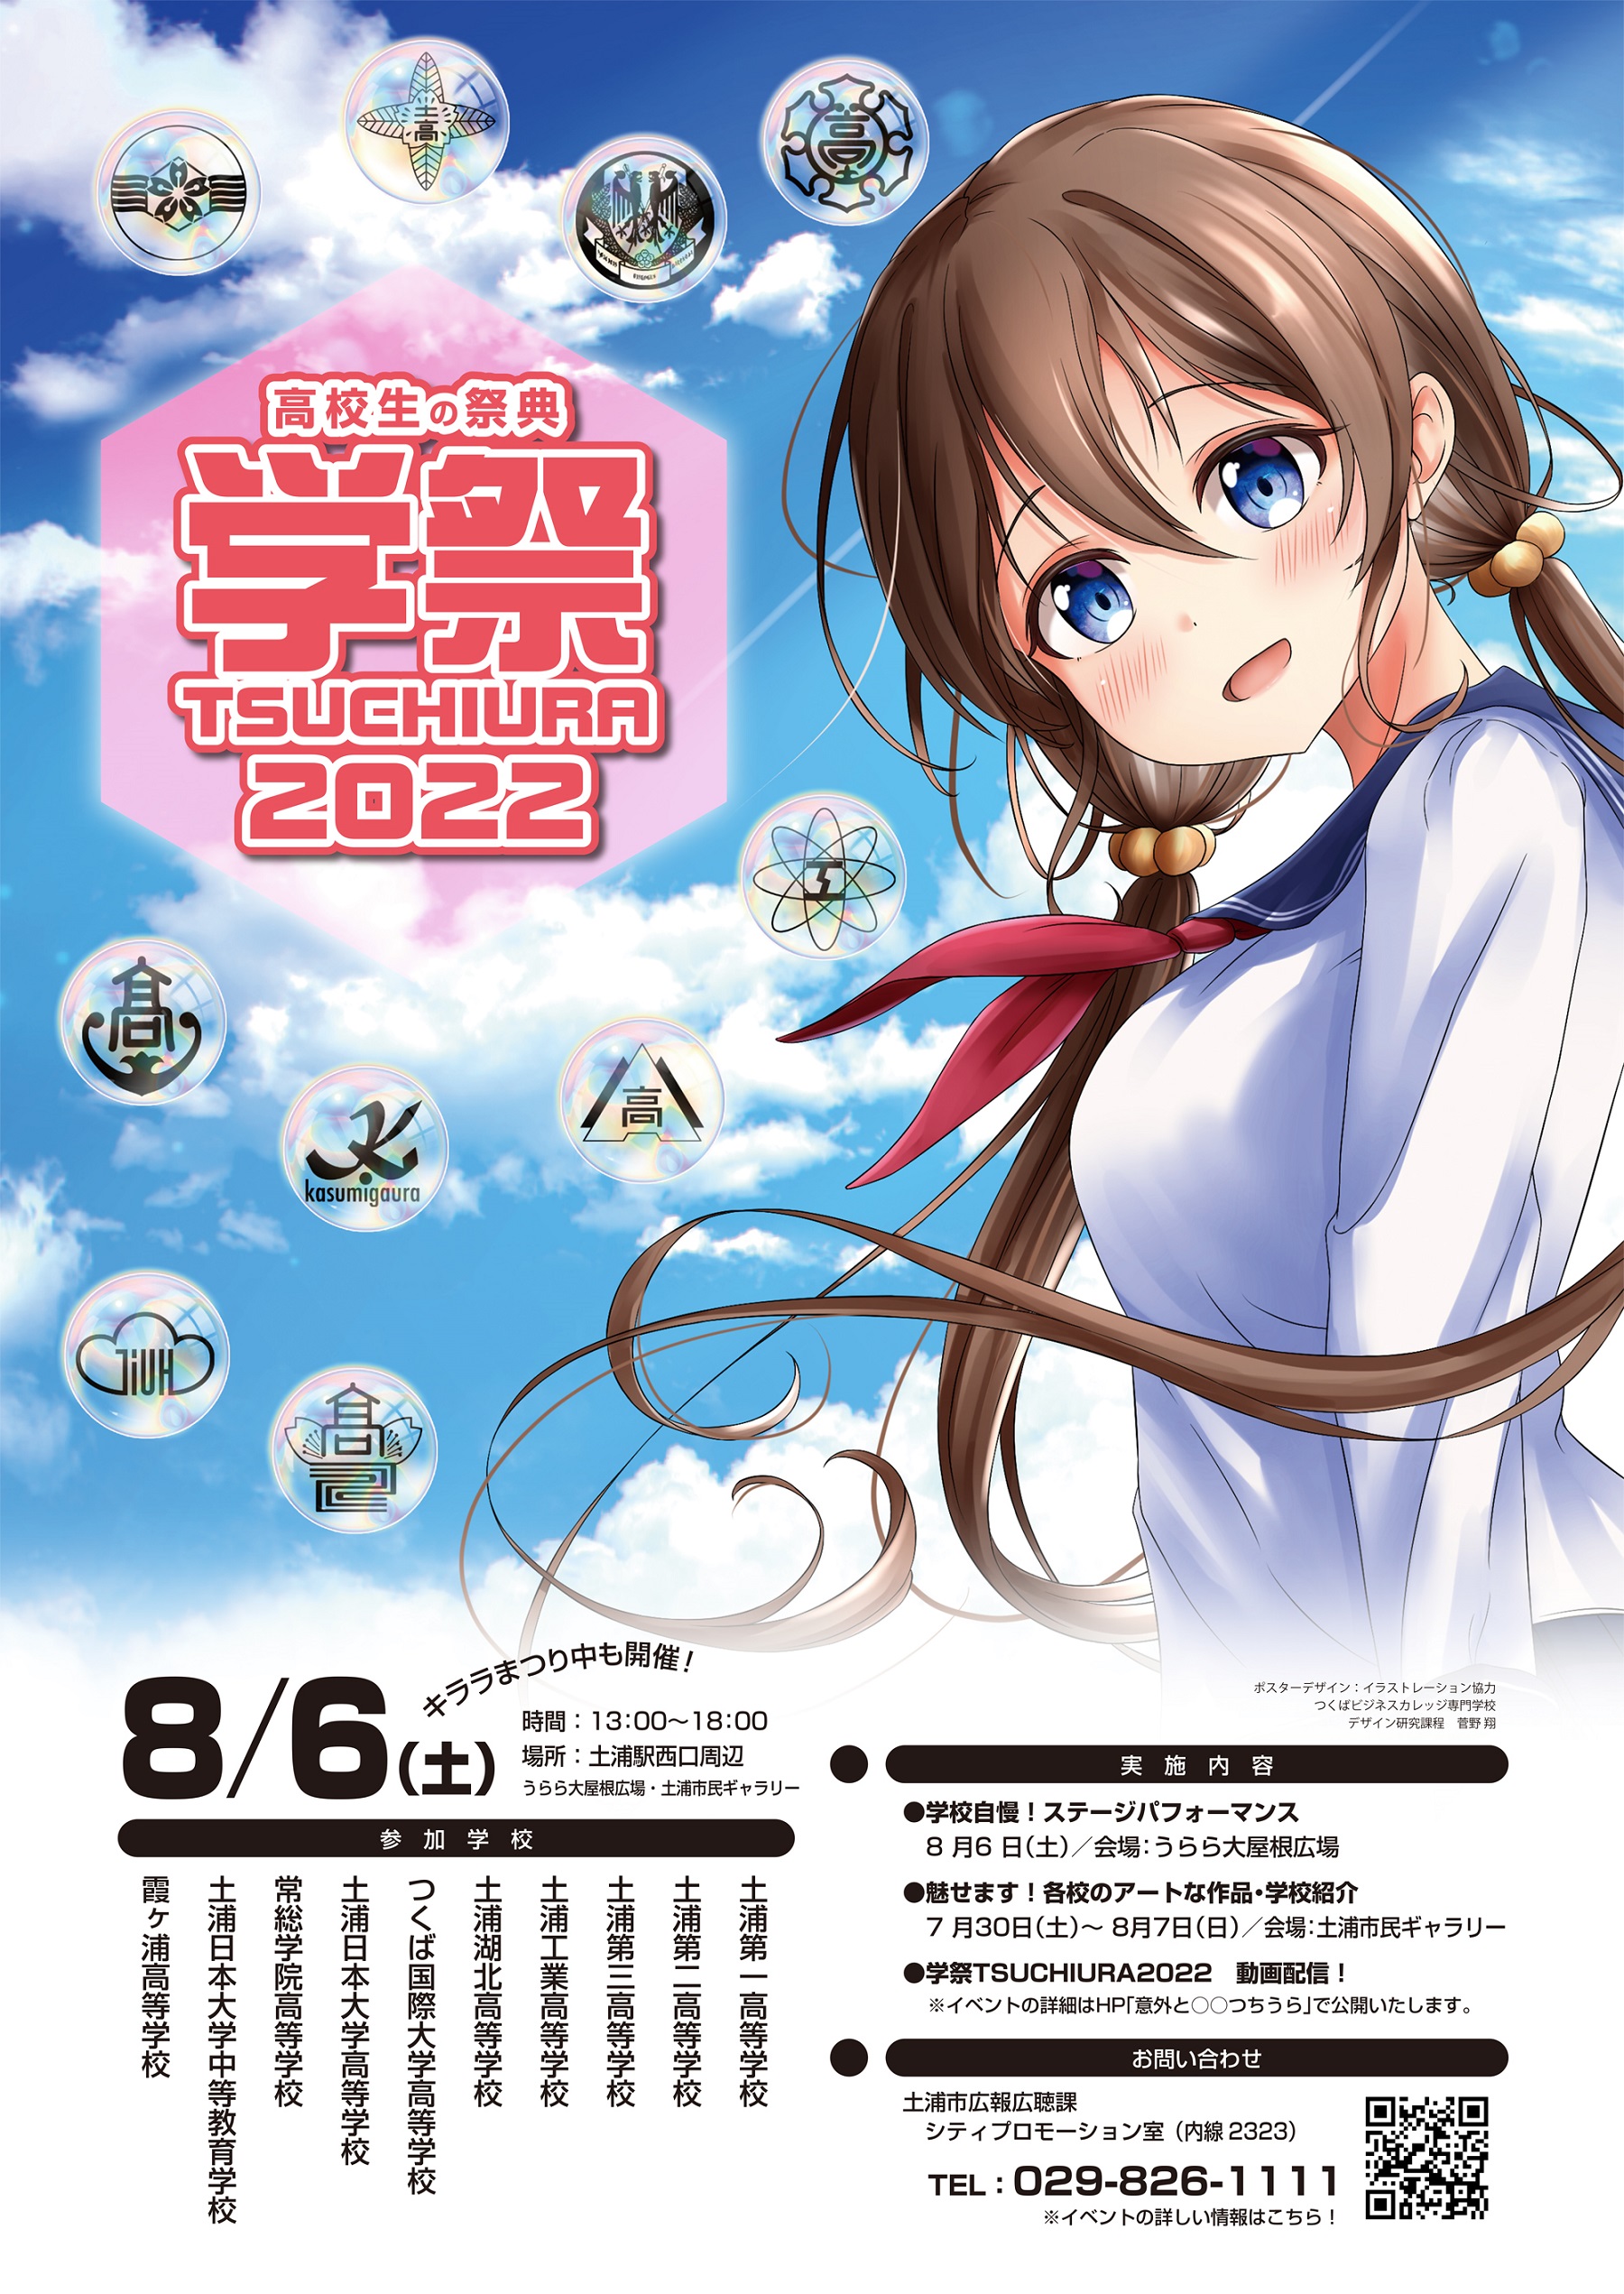 『学祭TSUCHIURA2022ポスター』の画像